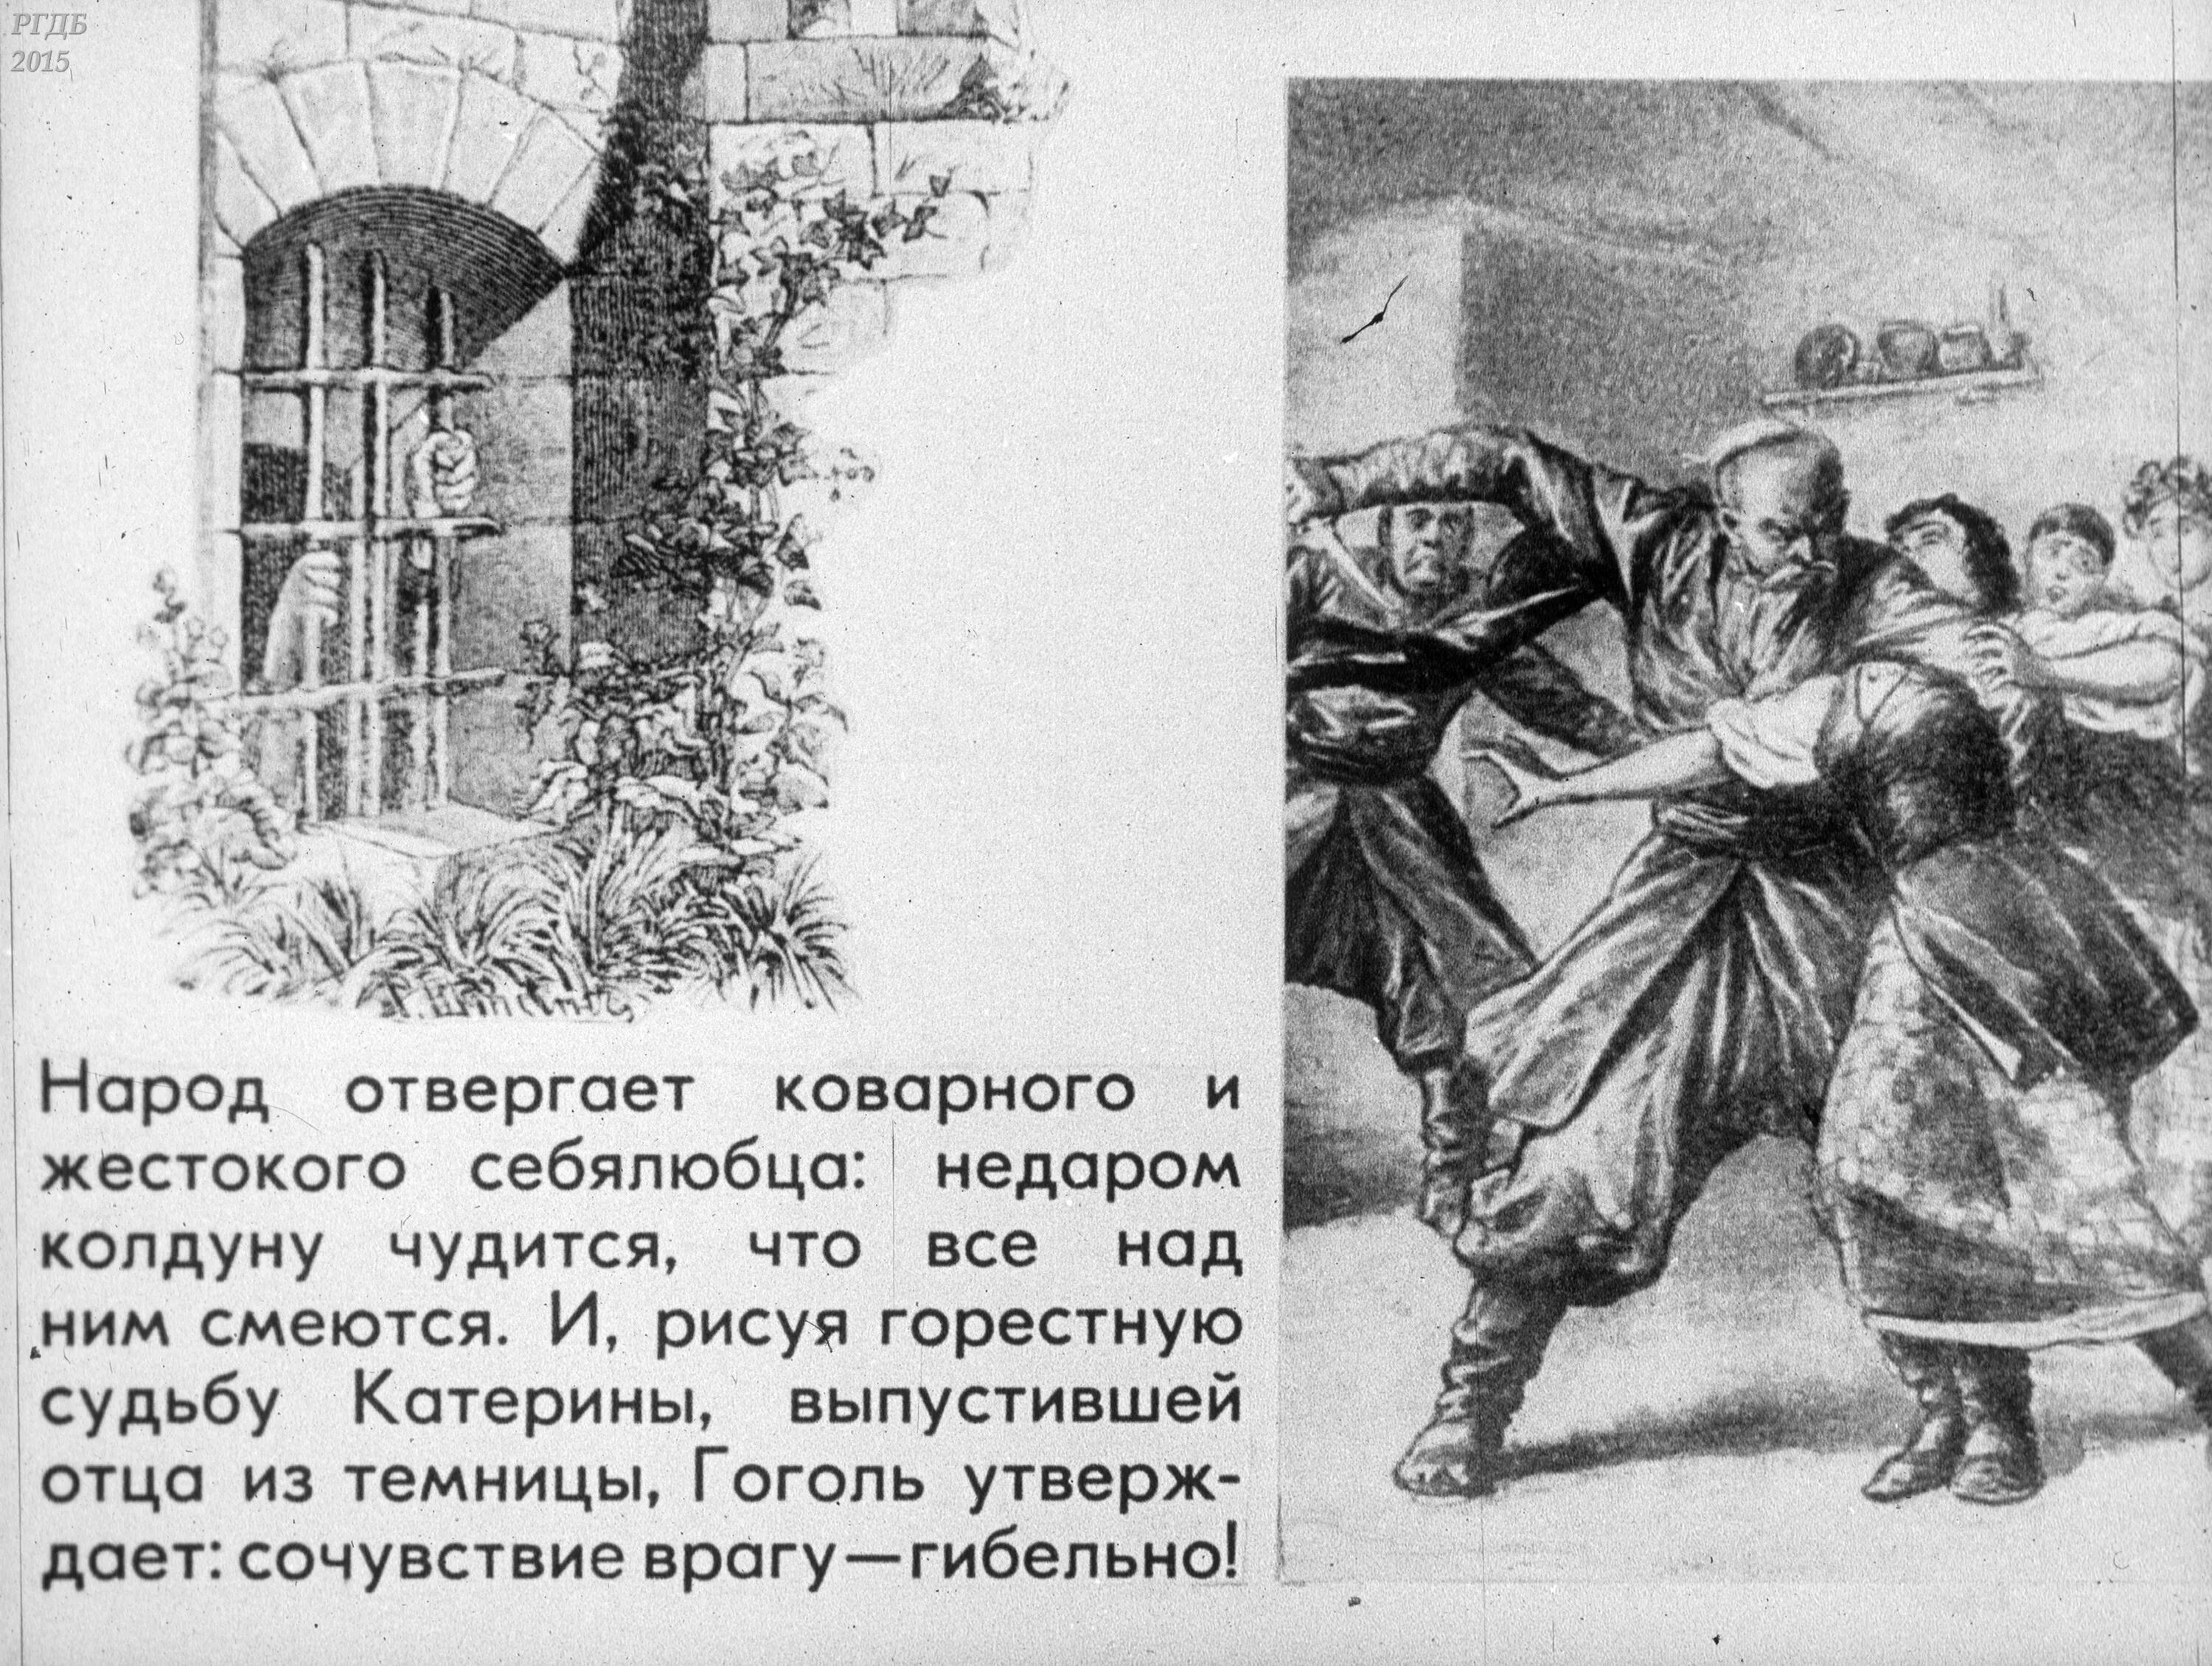 Гоголь месть читать. Иллюстрации к повести Гоголя страшная месть. Повесть Гоголя страшная месть.